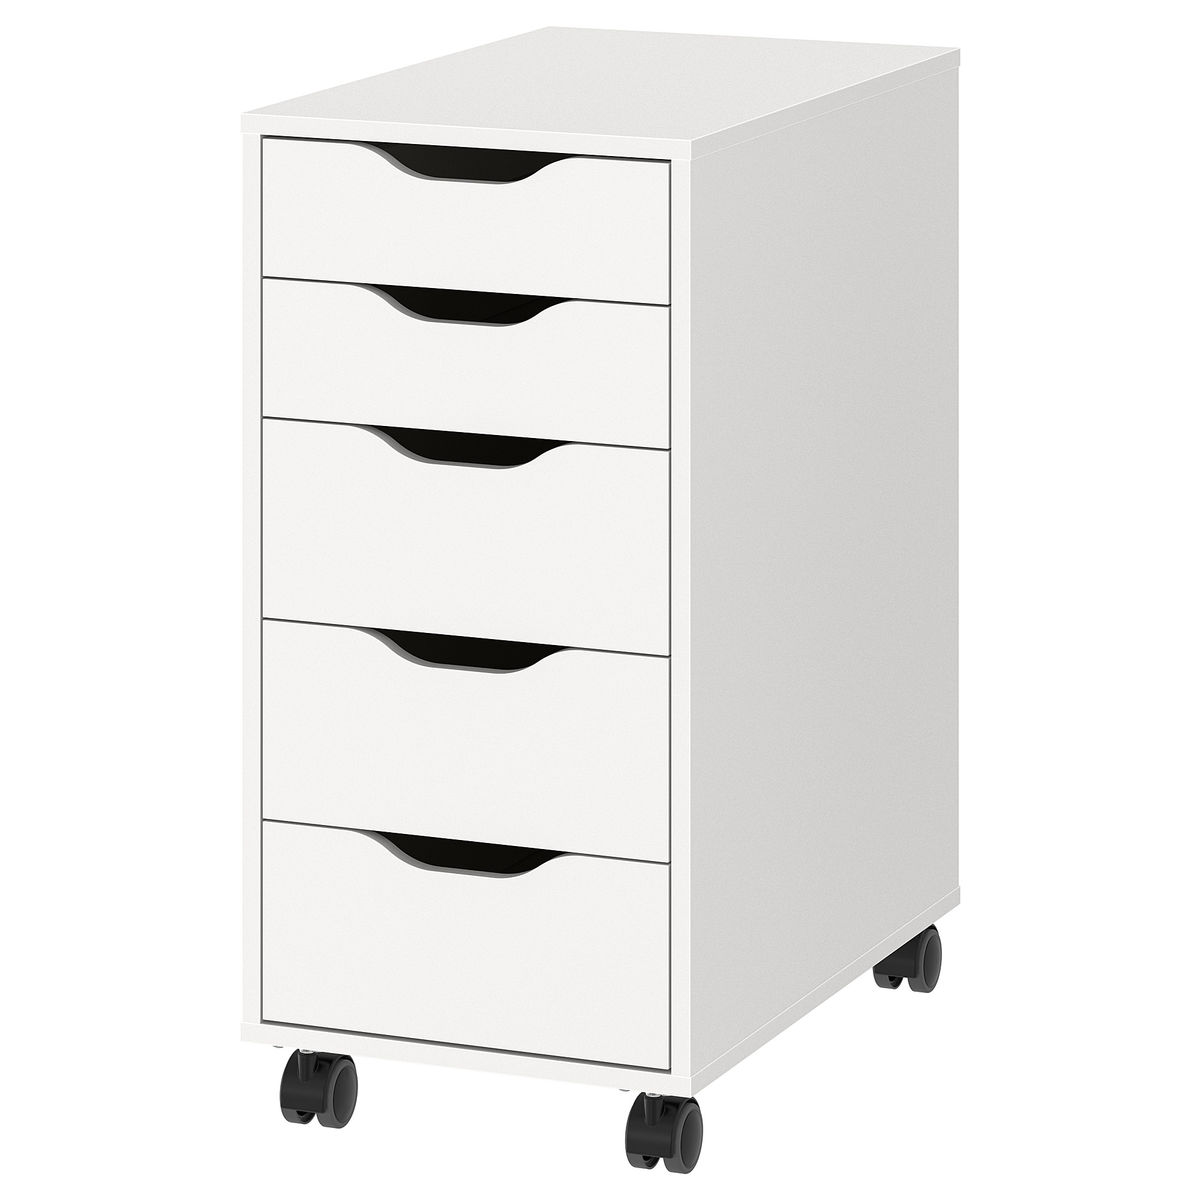 KÖGE Paillasson, gris/noir, 102x152 cm - IKEA